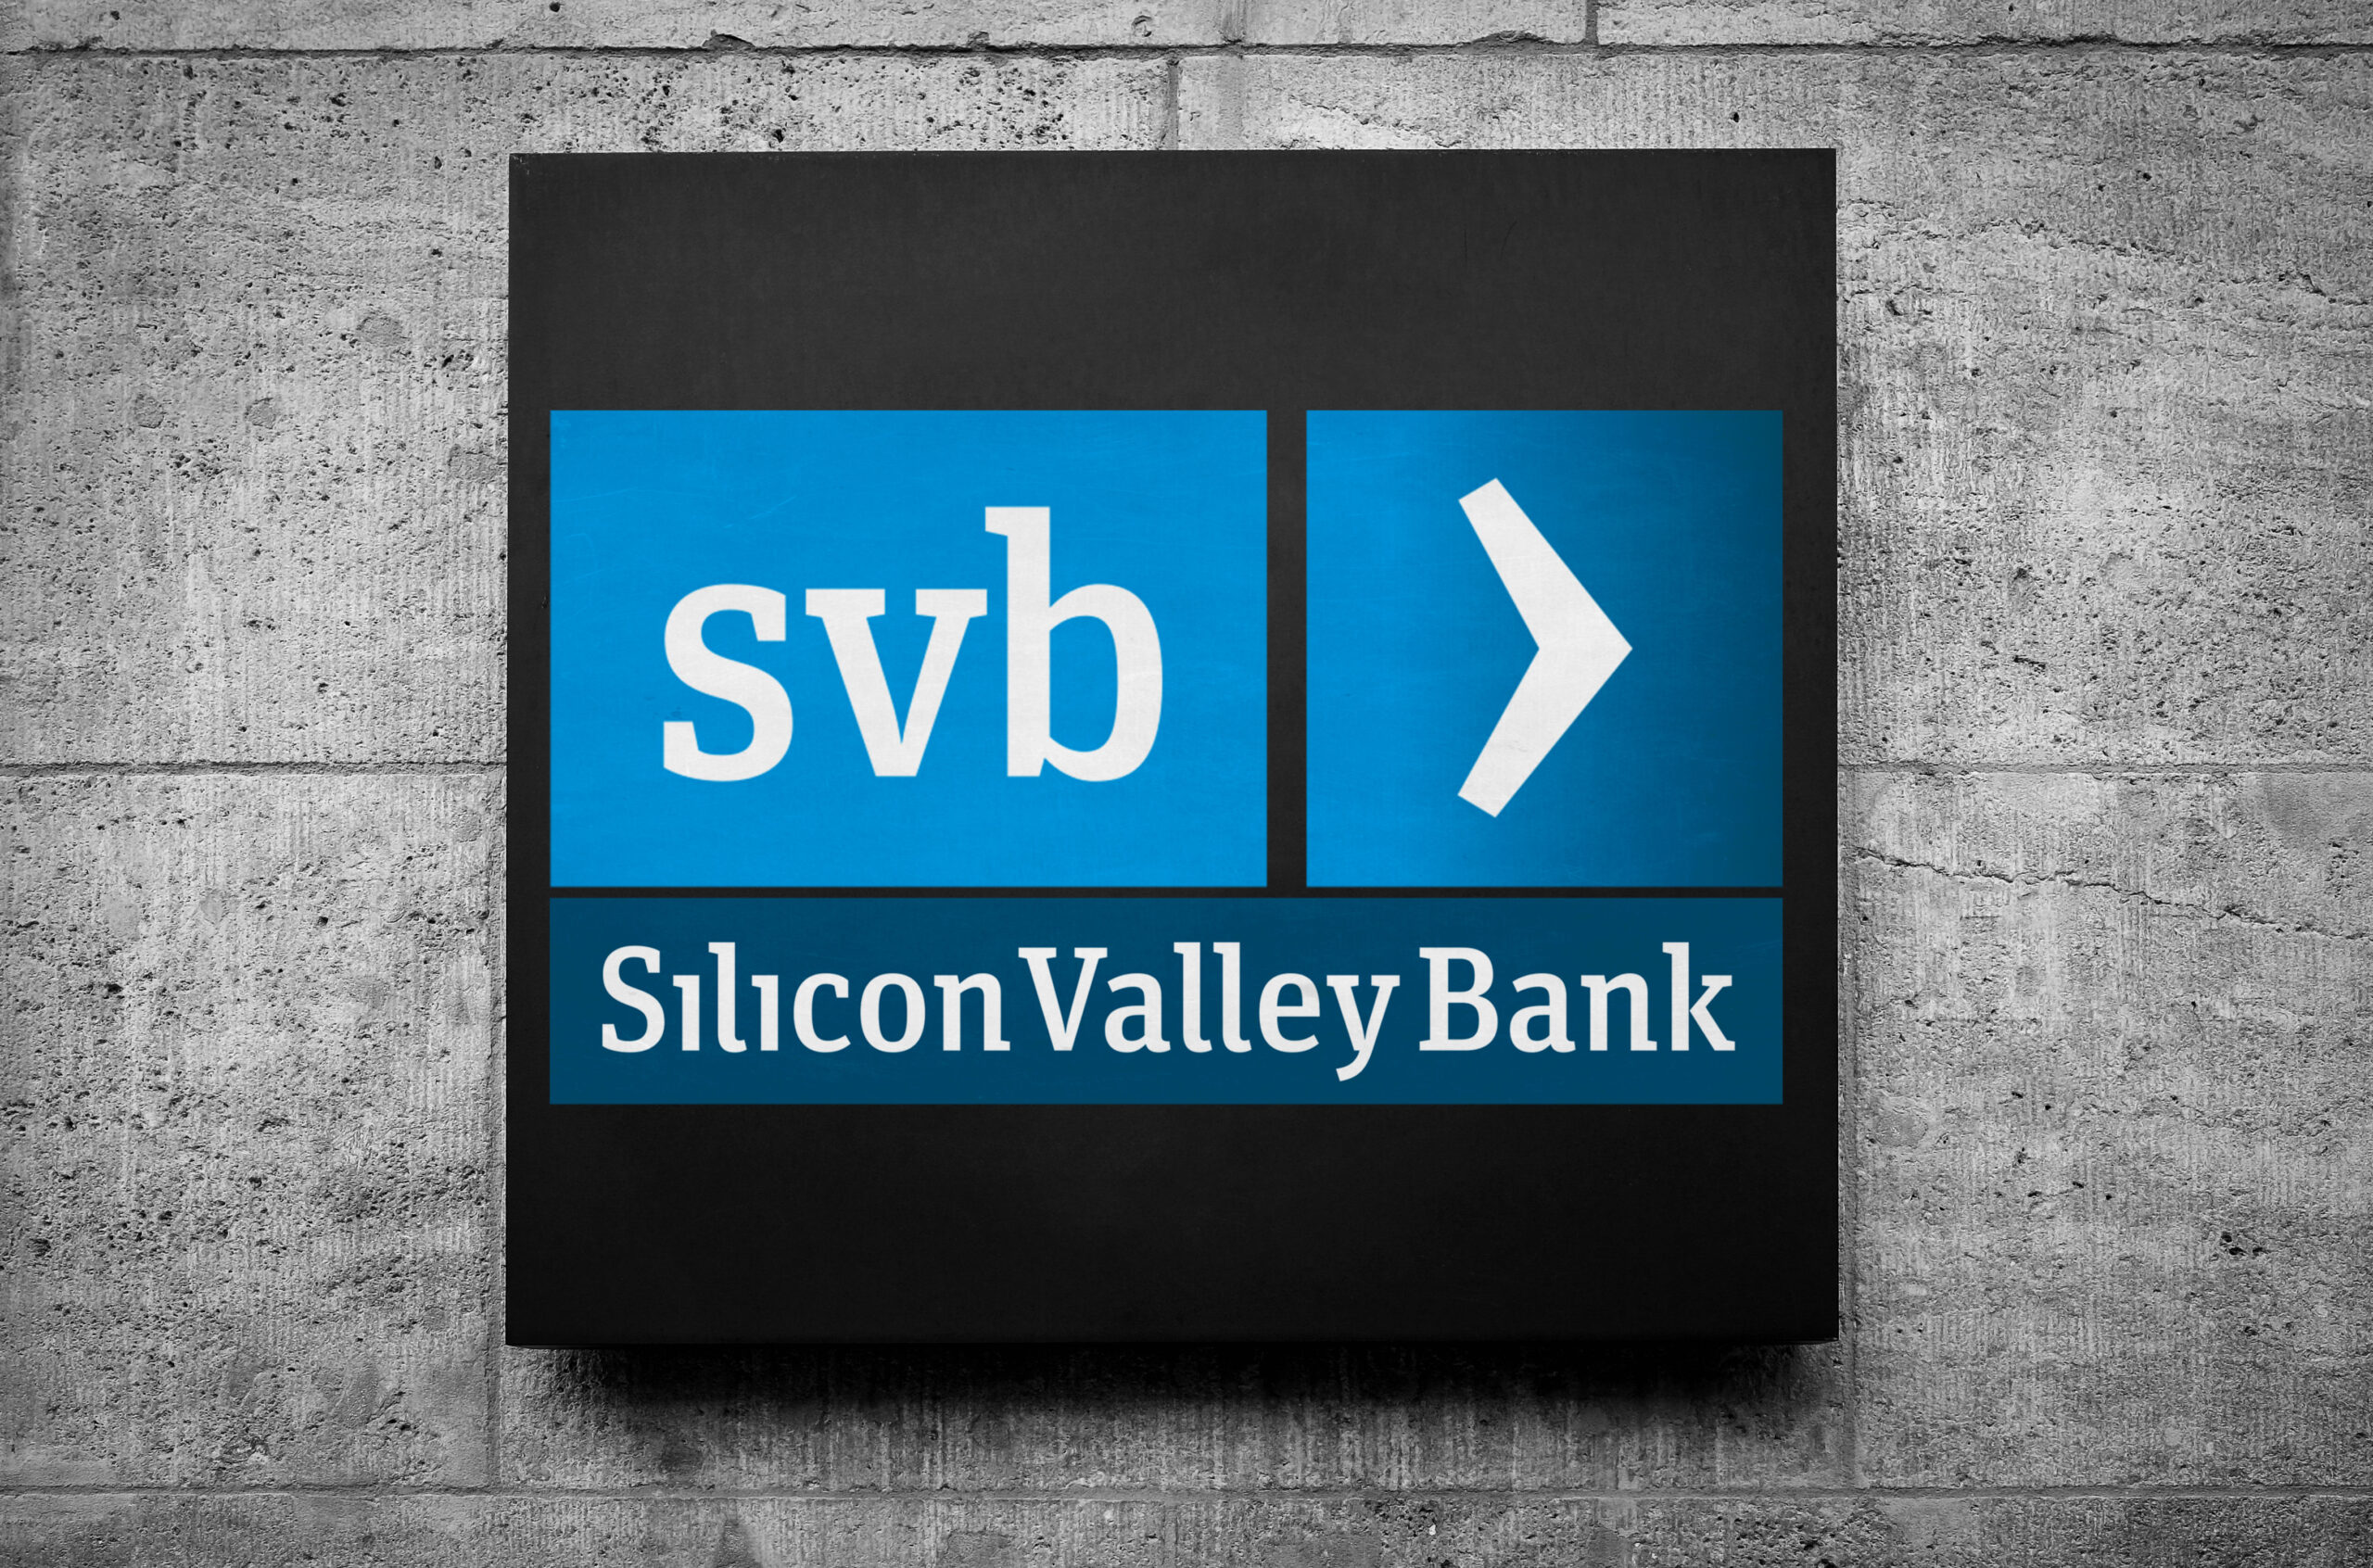 SVB Silicon Valley Bank in California